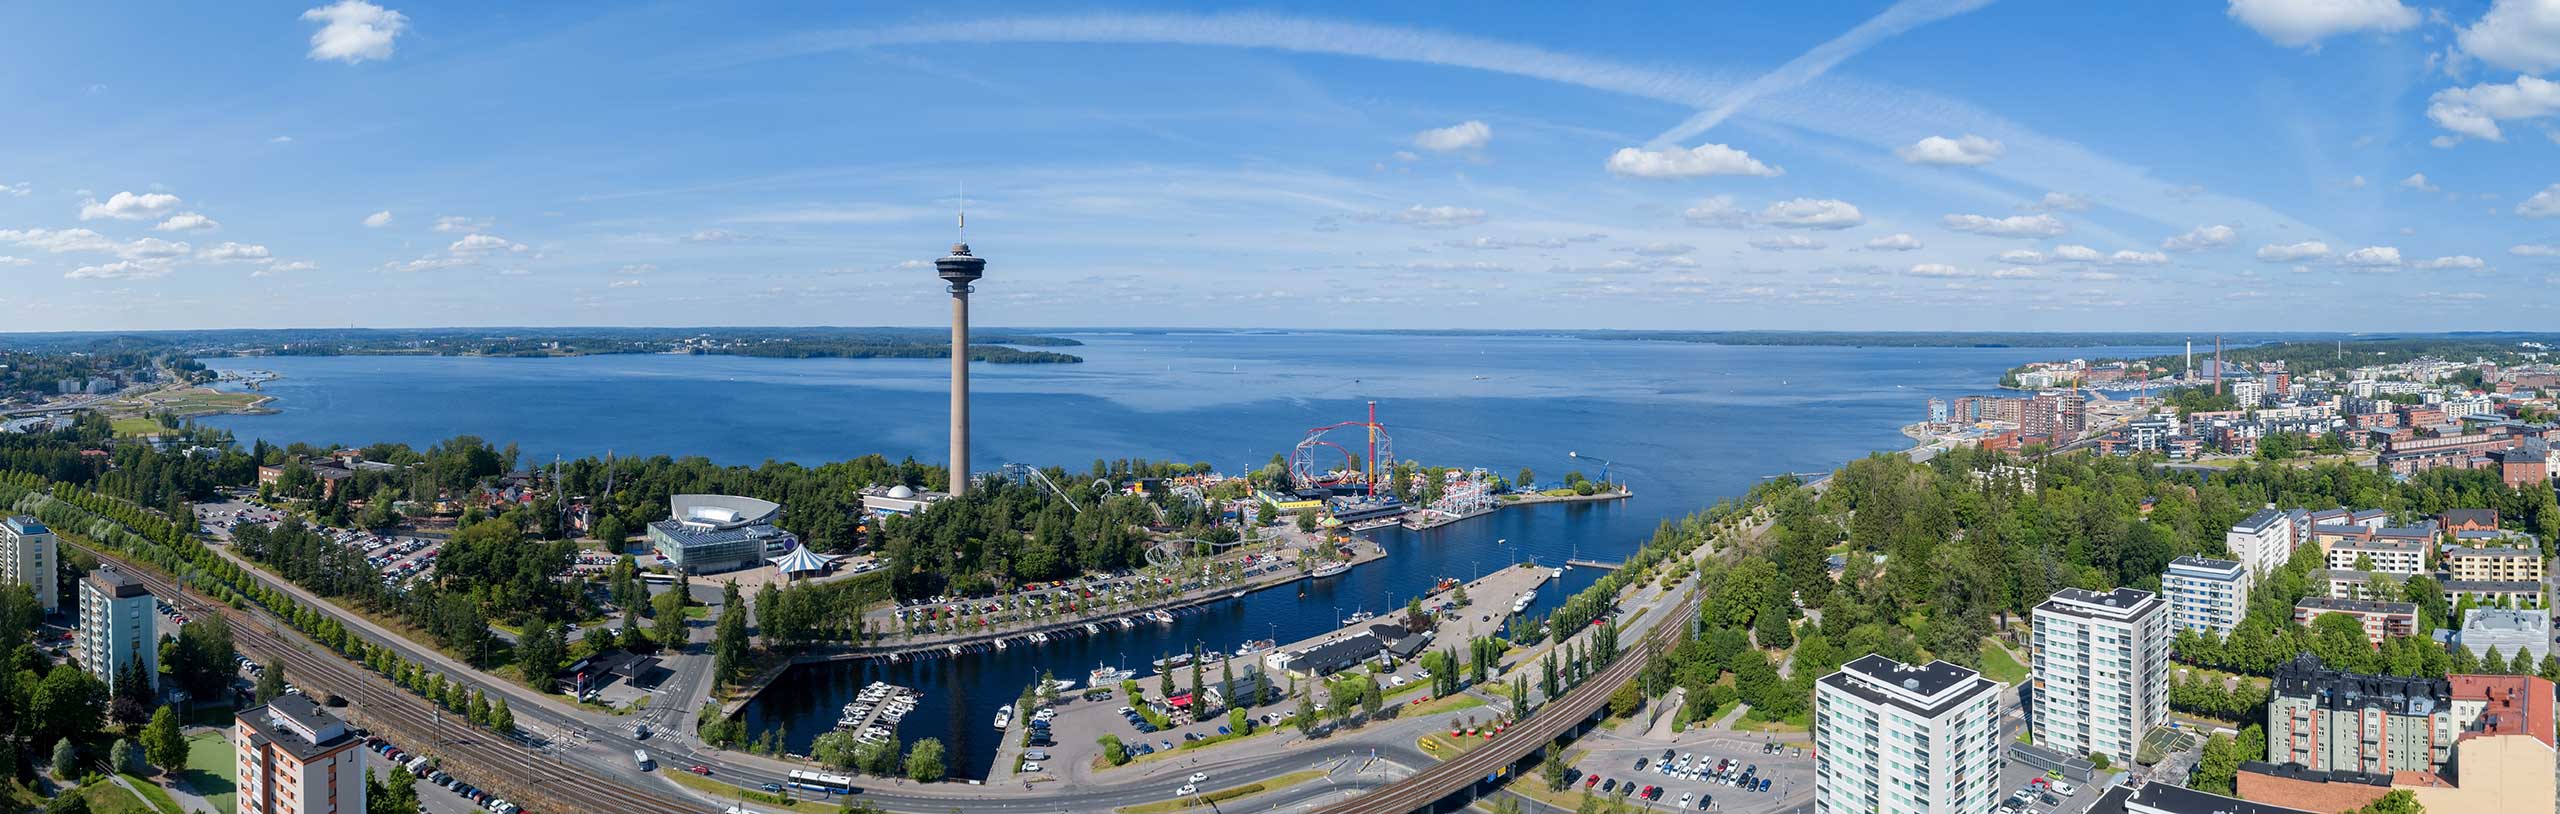 Tampere kuvattuna ilmasta. Kuvassa näkyy mm. Särkänniemi ja Näsijärvi.